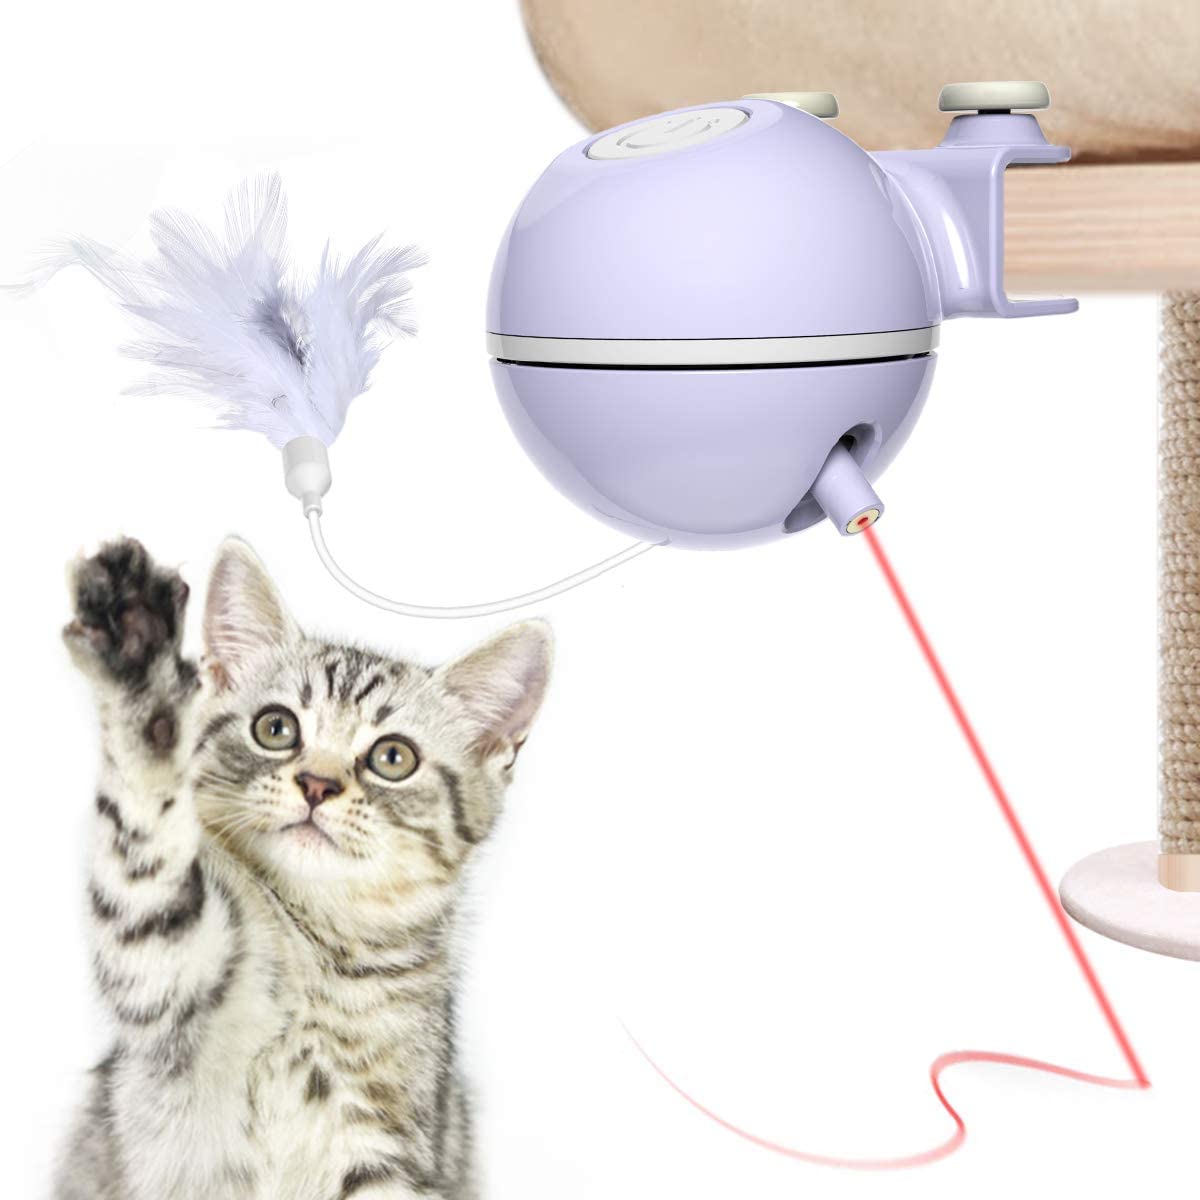  DADYPET Juguetes para Gatos interactivos,Electrónico Juguete Gato, 2 en 1 Giratorio de 360 ​​Grados con Bola y Plumas Juguetes Gatos,USB Recargable 